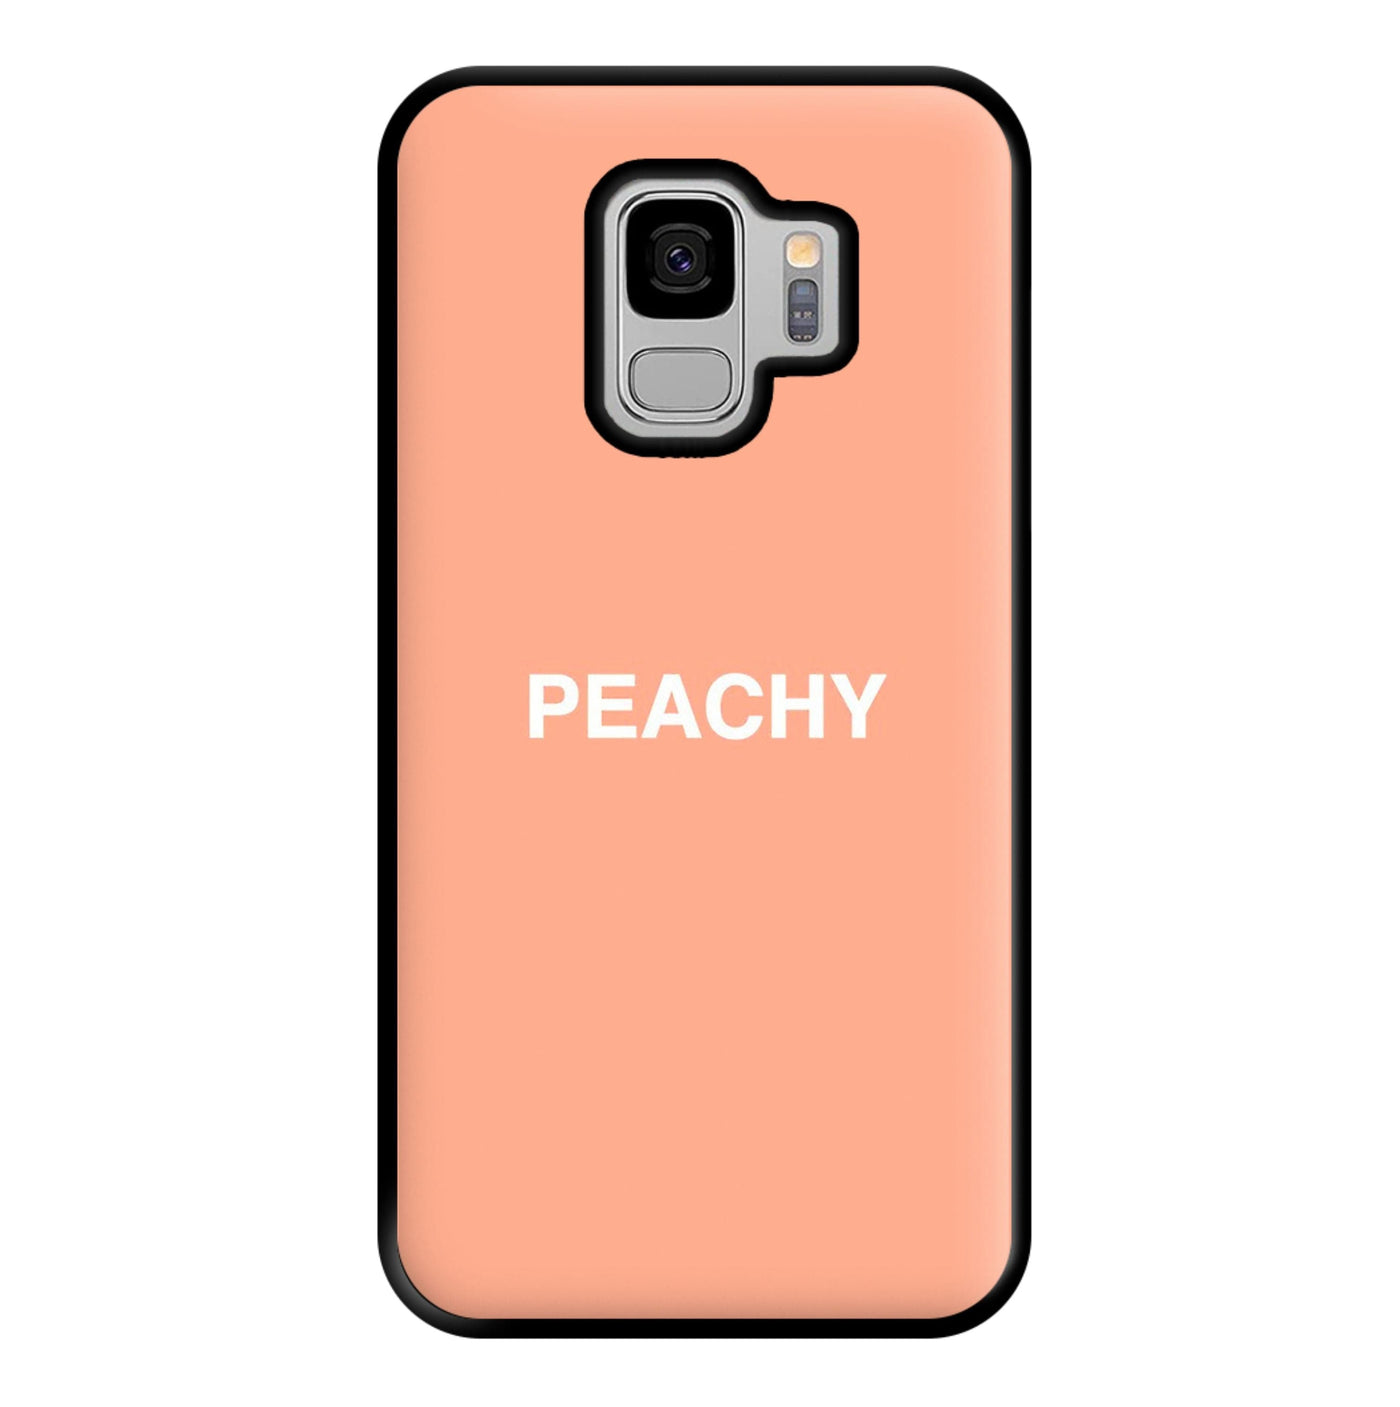 Peachy Phone Case